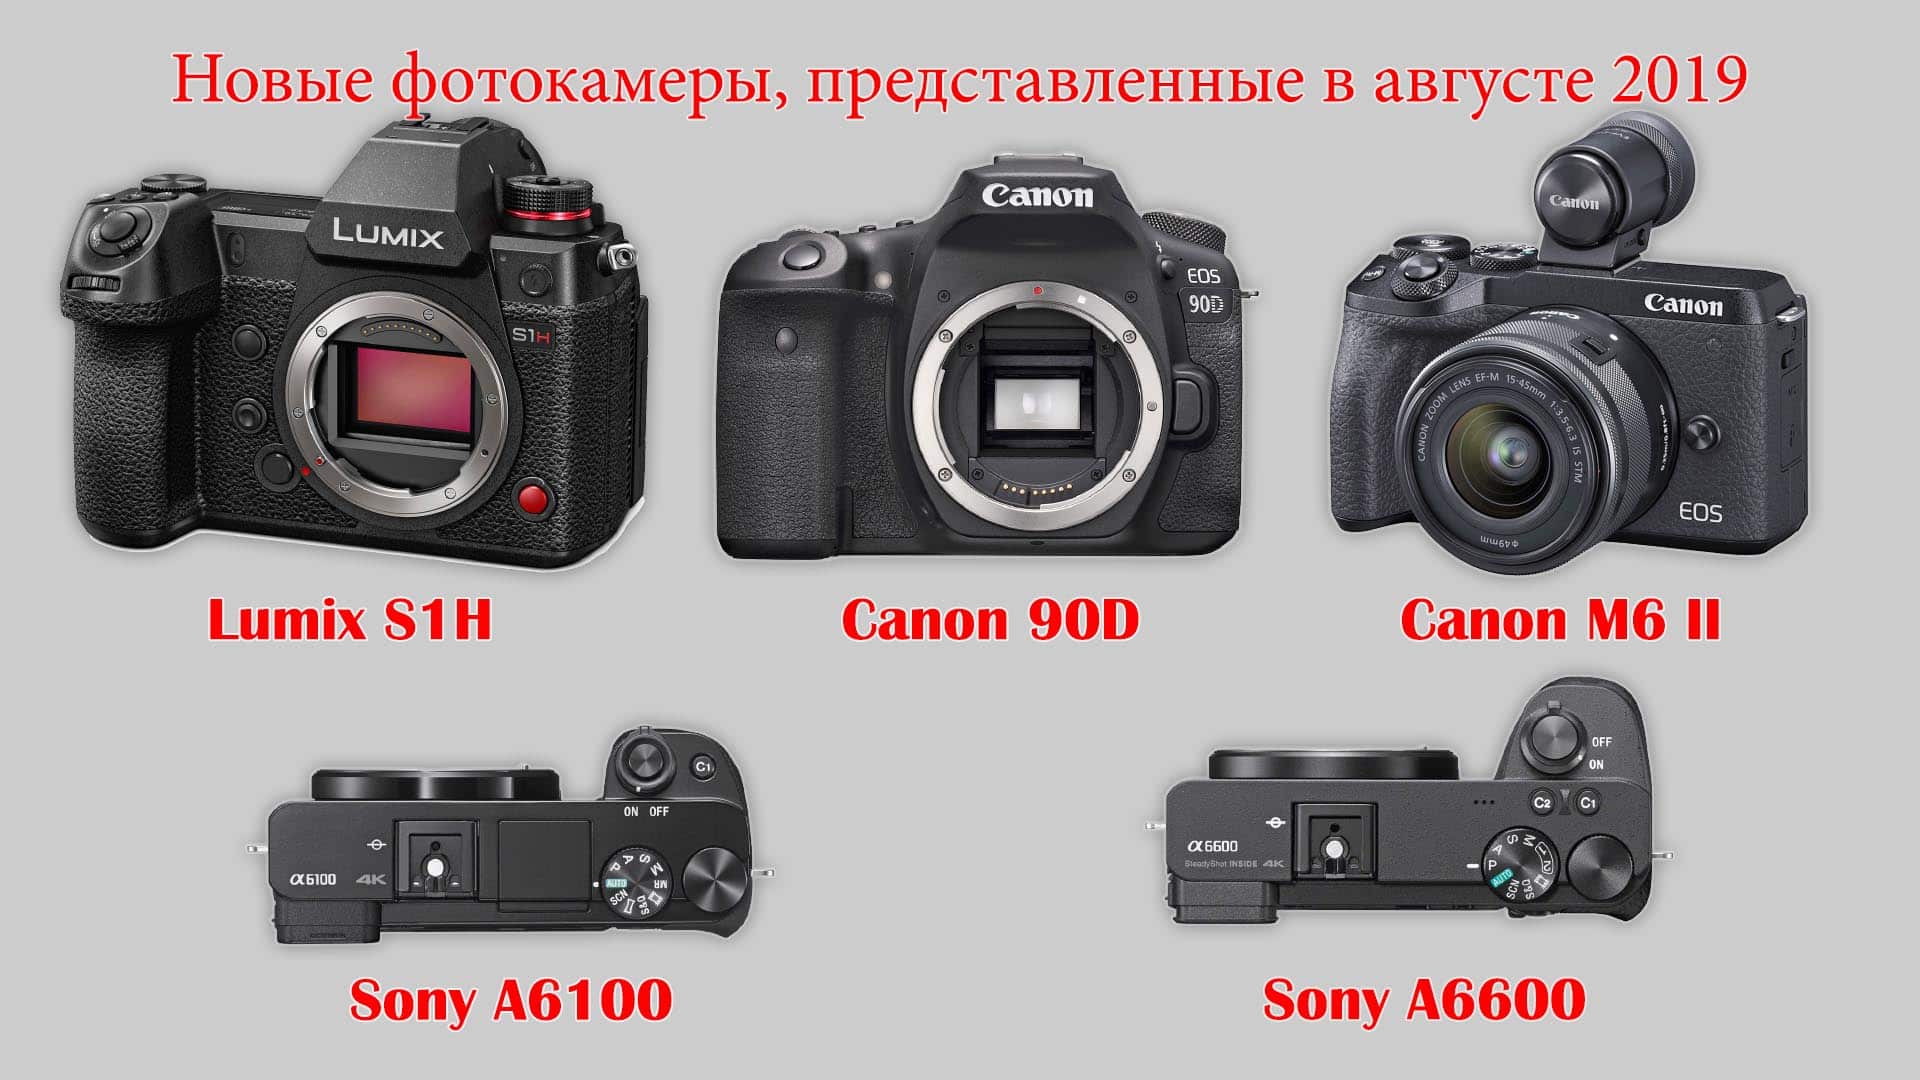 Новые фотокамеры на август 2019 - Lumix S1H, Canon 90D и M6-2, Sony A6100 и A6600 - обложка статьи